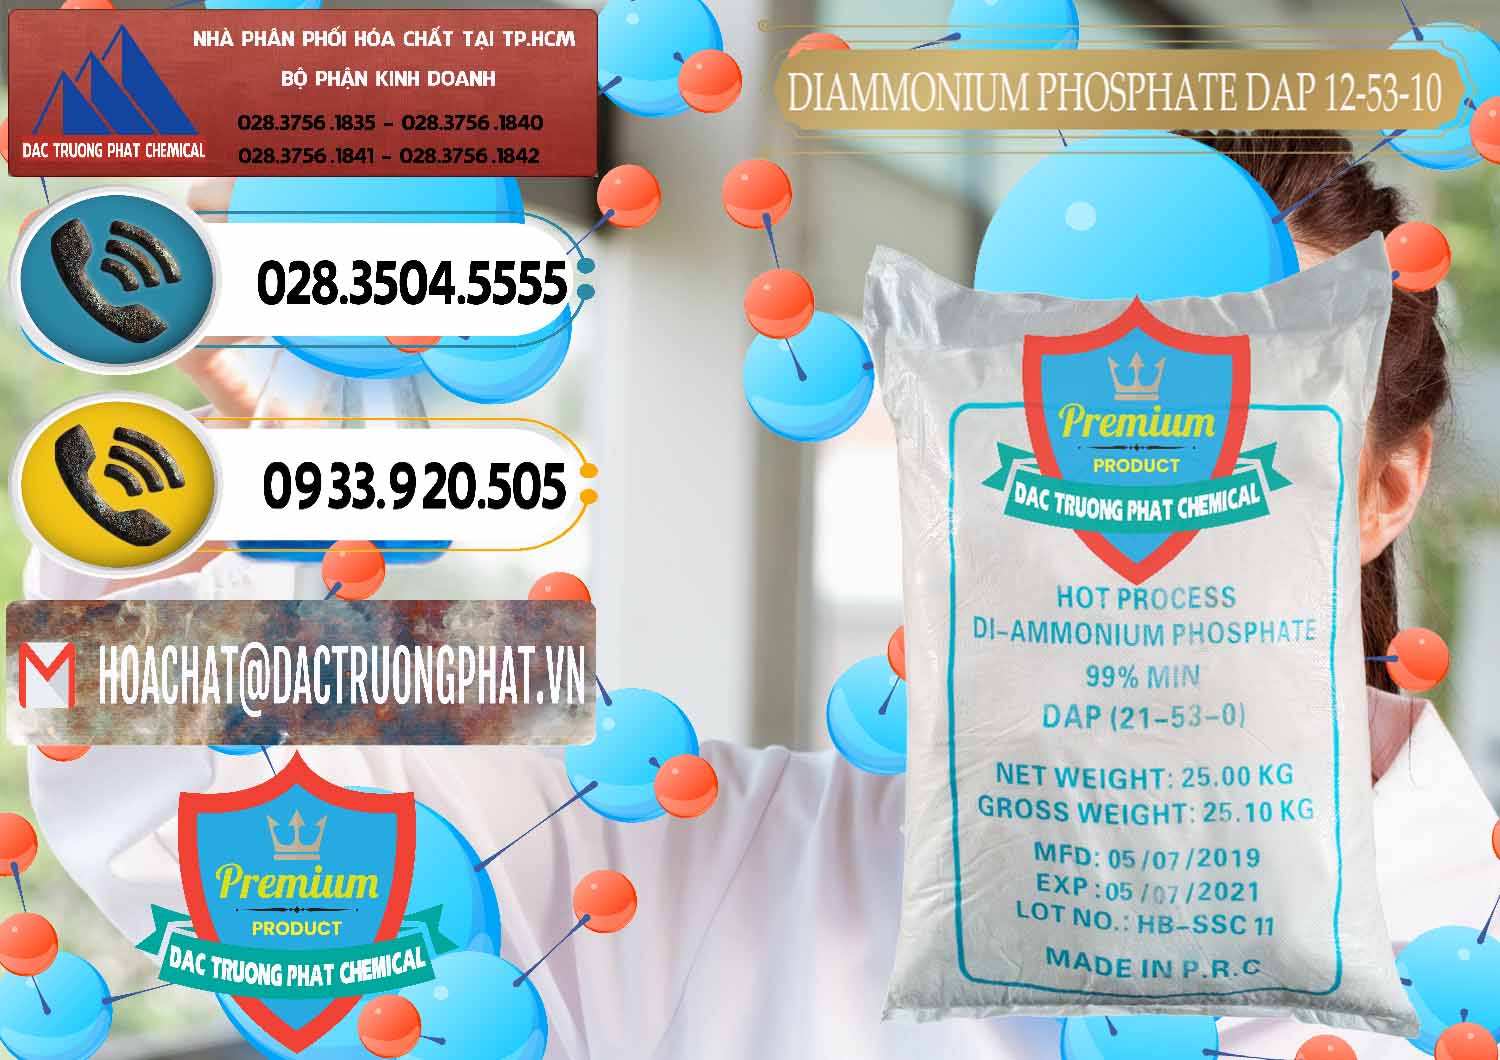 Cty cung ứng ( bán ) DAP - Diammonium Phosphate Trung Quốc China - 0319 - Đơn vị chuyên cung ứng ( phân phối ) hóa chất tại TP.HCM - hoachatdetnhuom.vn